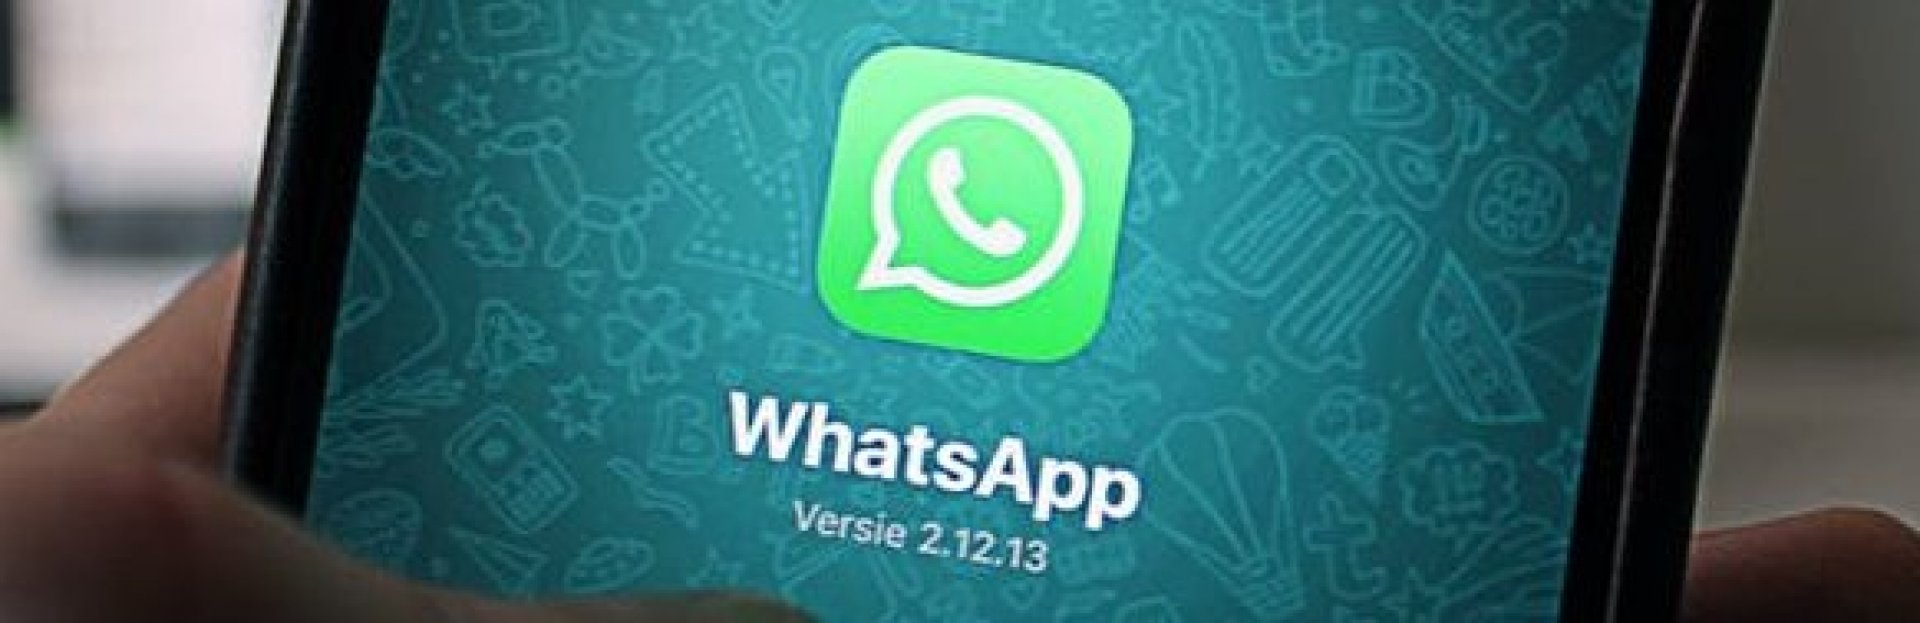 WhatsApp Business: una nueva forma de comunicación para empresas